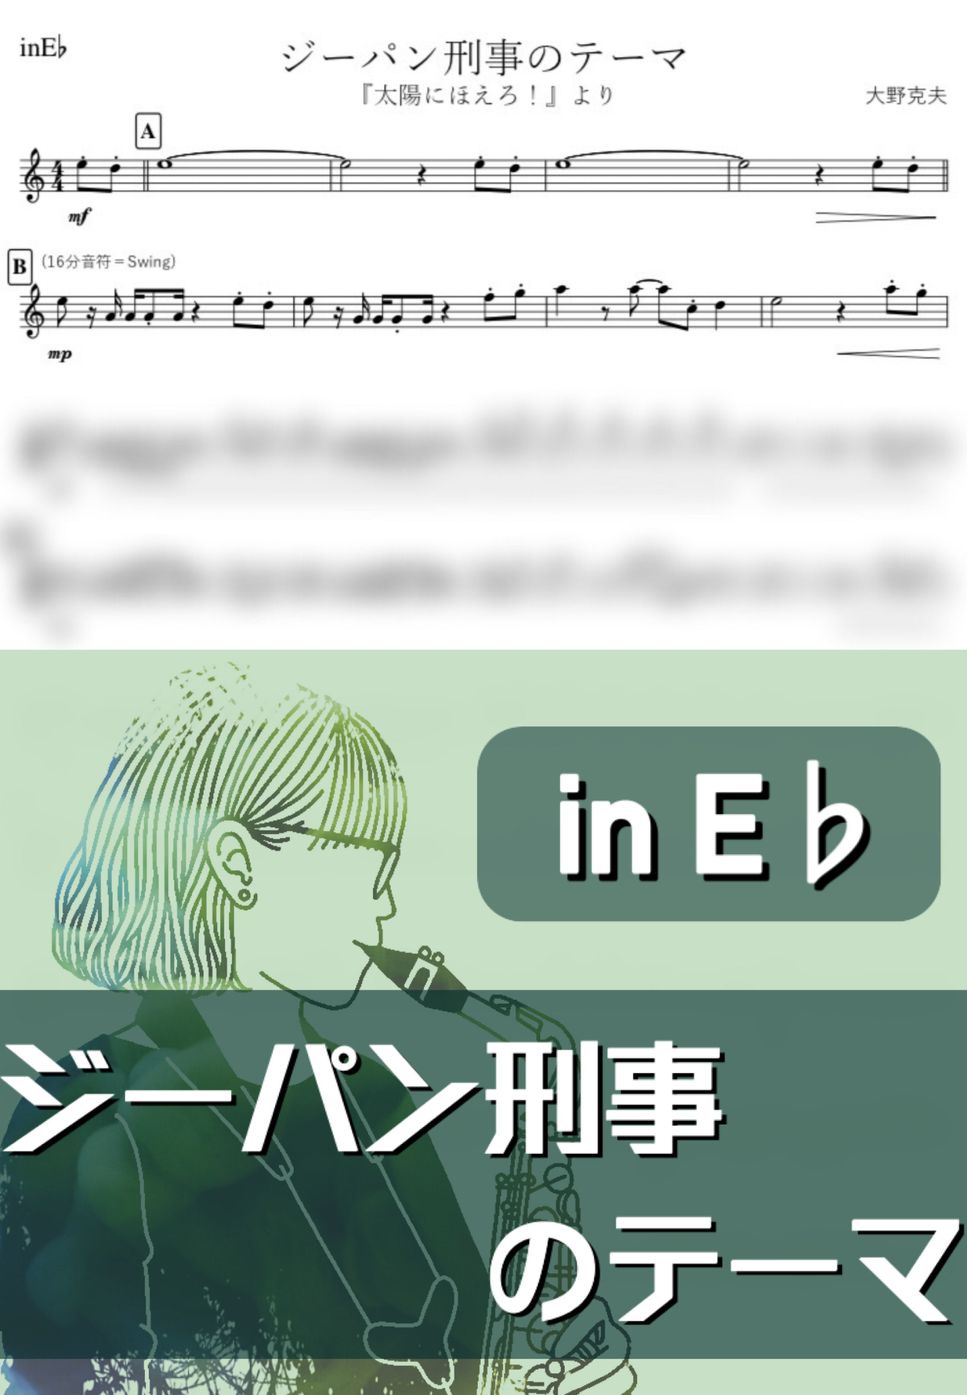 大野克夫 - ジーパン刑事のテーマ (E♭) by kanamusic